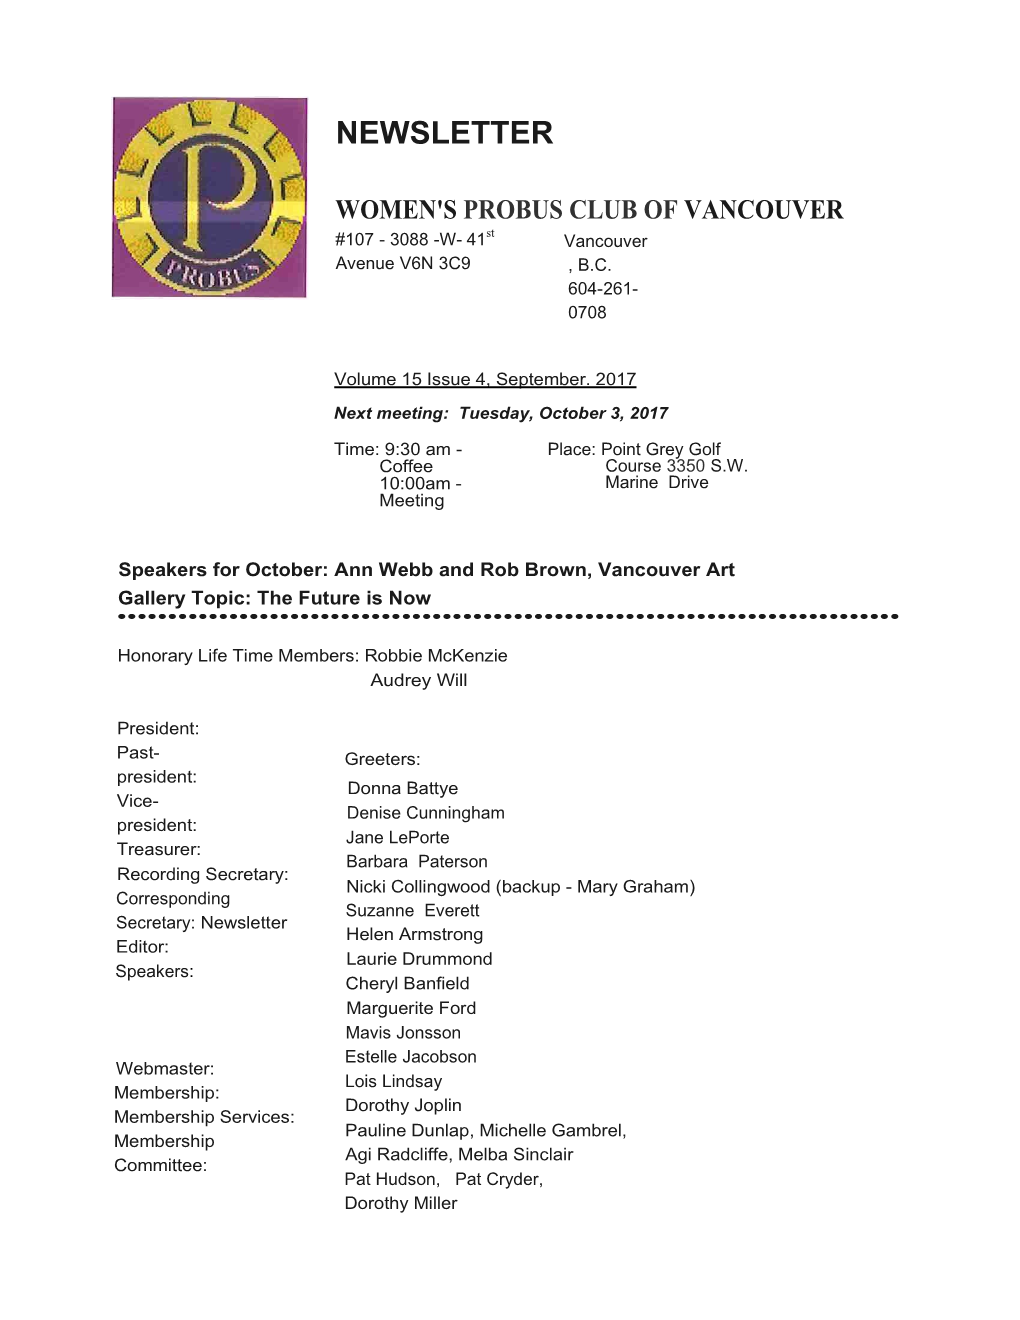 Women's Probus Club of Vancouver